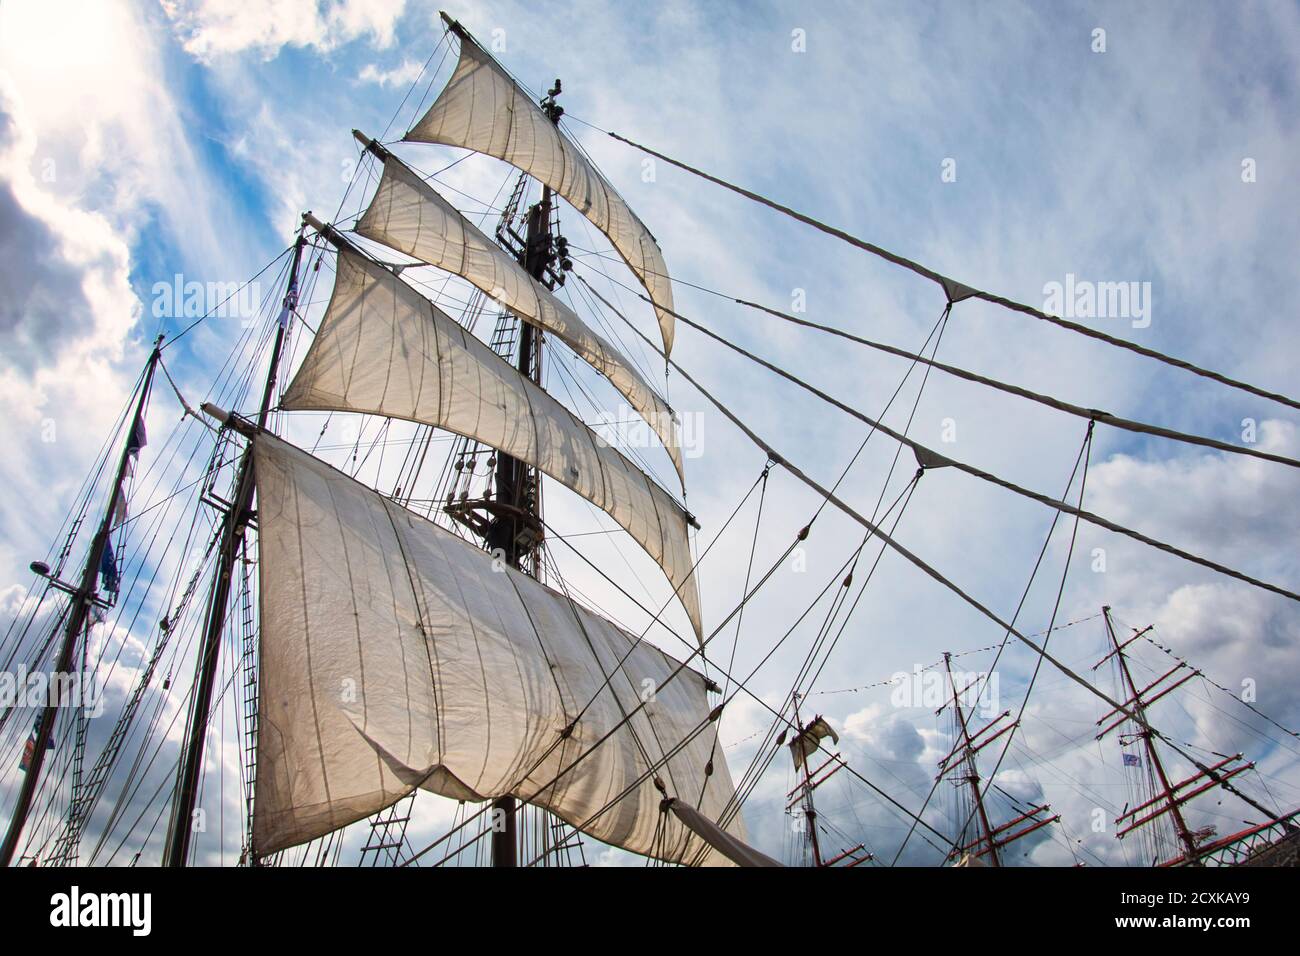 Vintage Segelschiff Mast Seile und Tackle, hohes Schiff Takelage Mast  Detail, blauer Himmel Hintergrund Stockfotografie - Alamy